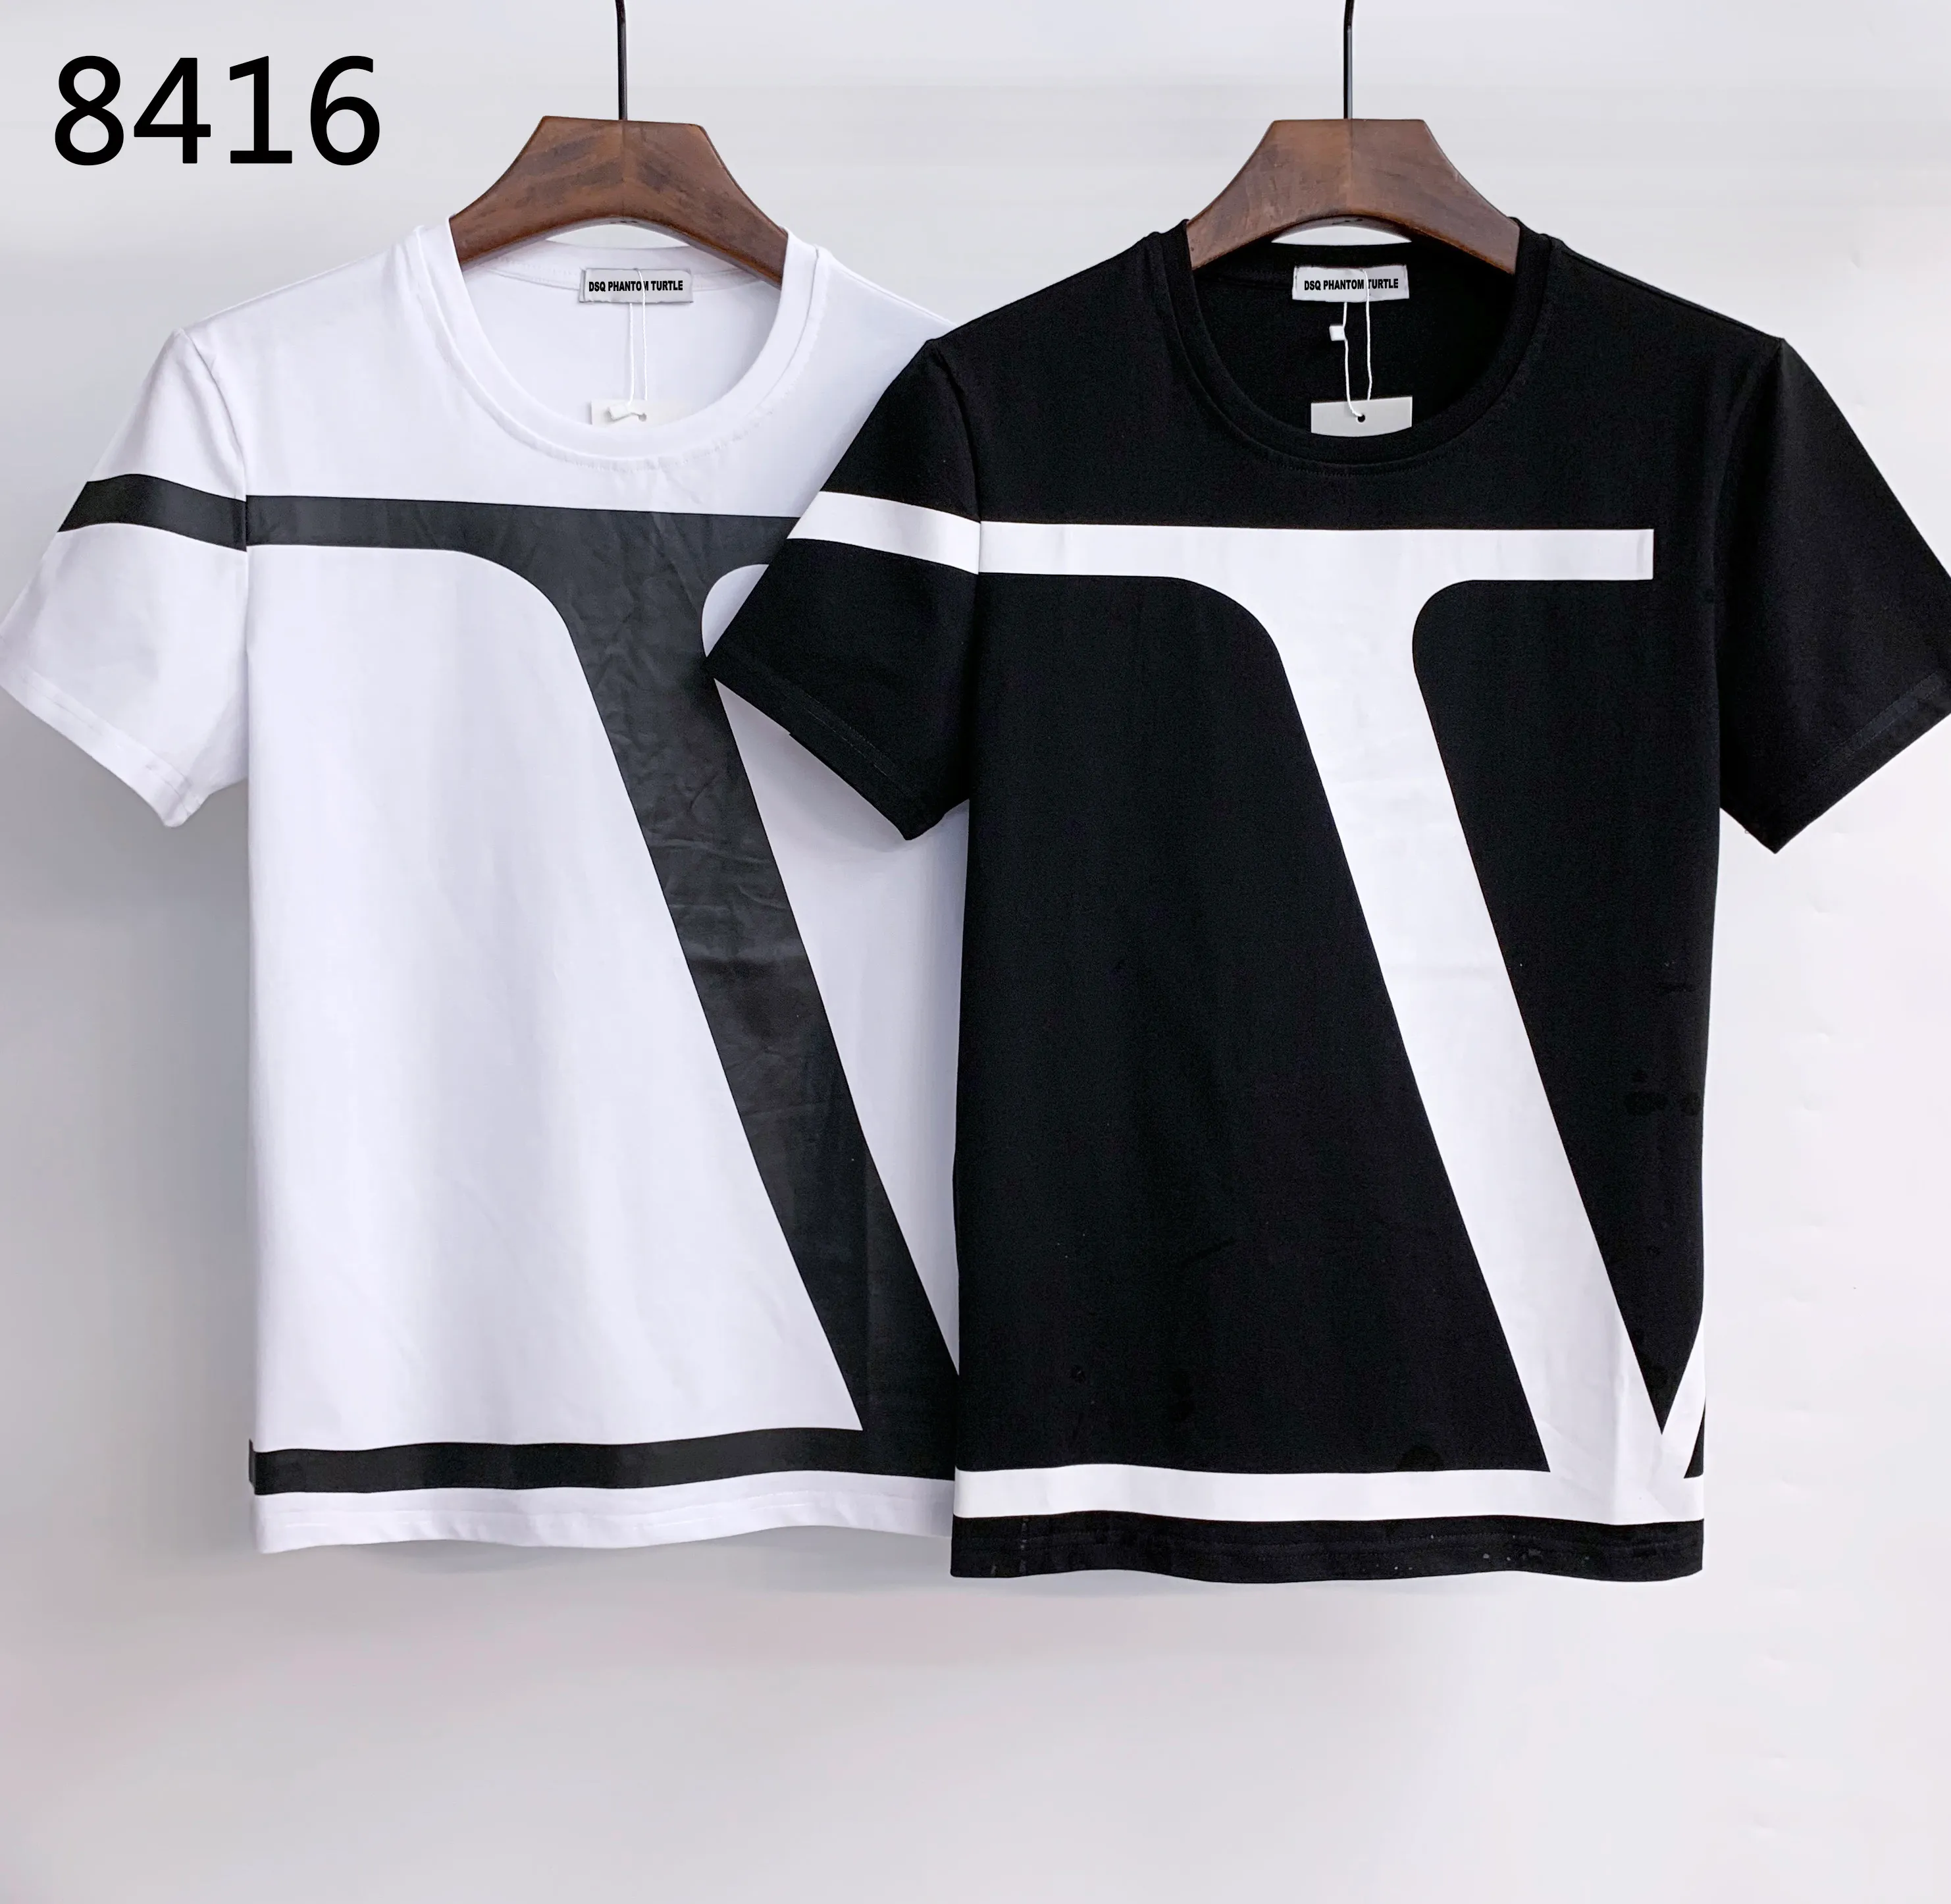 DSQ PHANTOM TURTLE 2021SS New Mens Designer T shirt Paris fashion Tshirts Summer T-shirt Male Top Quality 100% Cotton Tops 0545